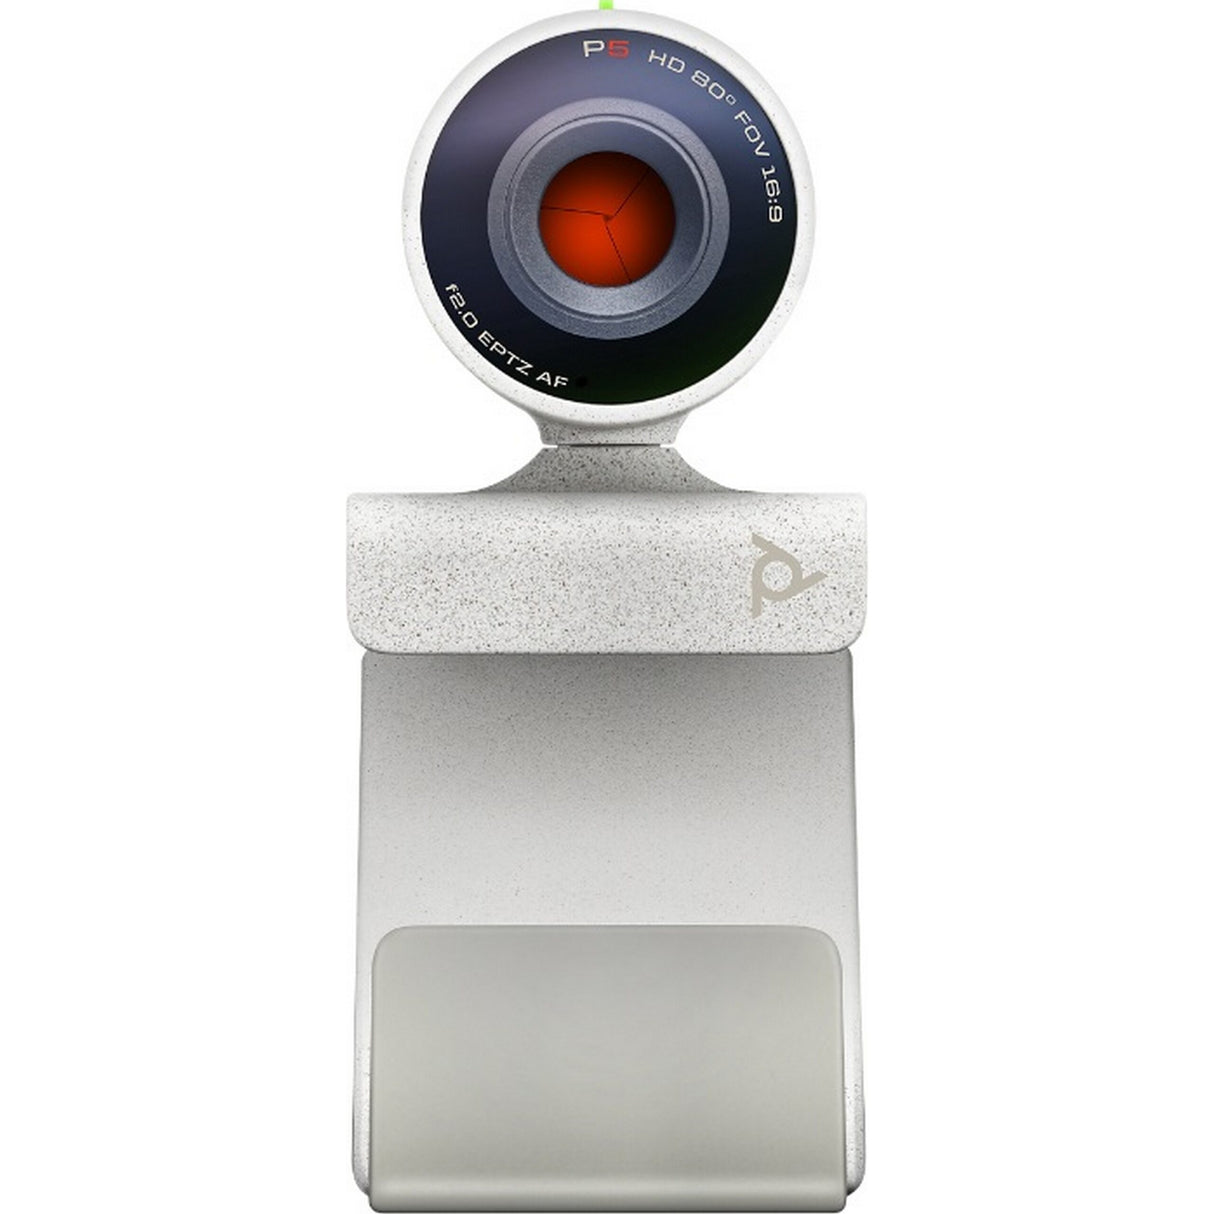 Poly Studio P5 1080p Conferencing Webcam